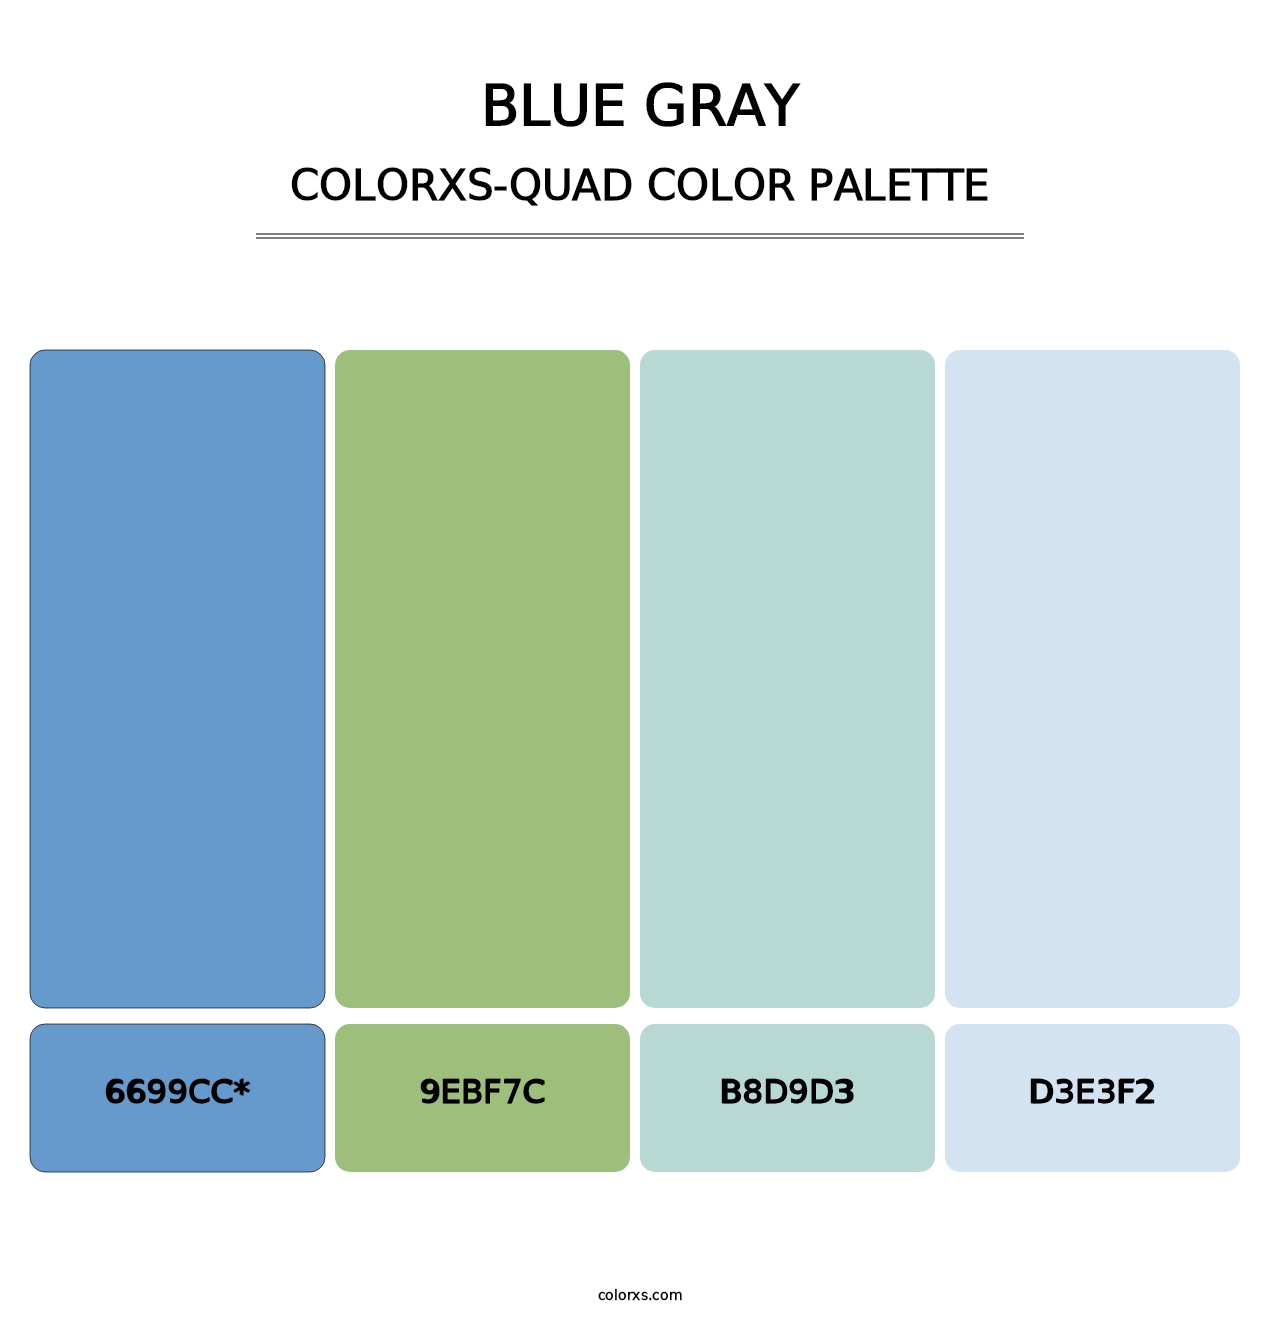 Blue Gray - Colorxs Quad Palette